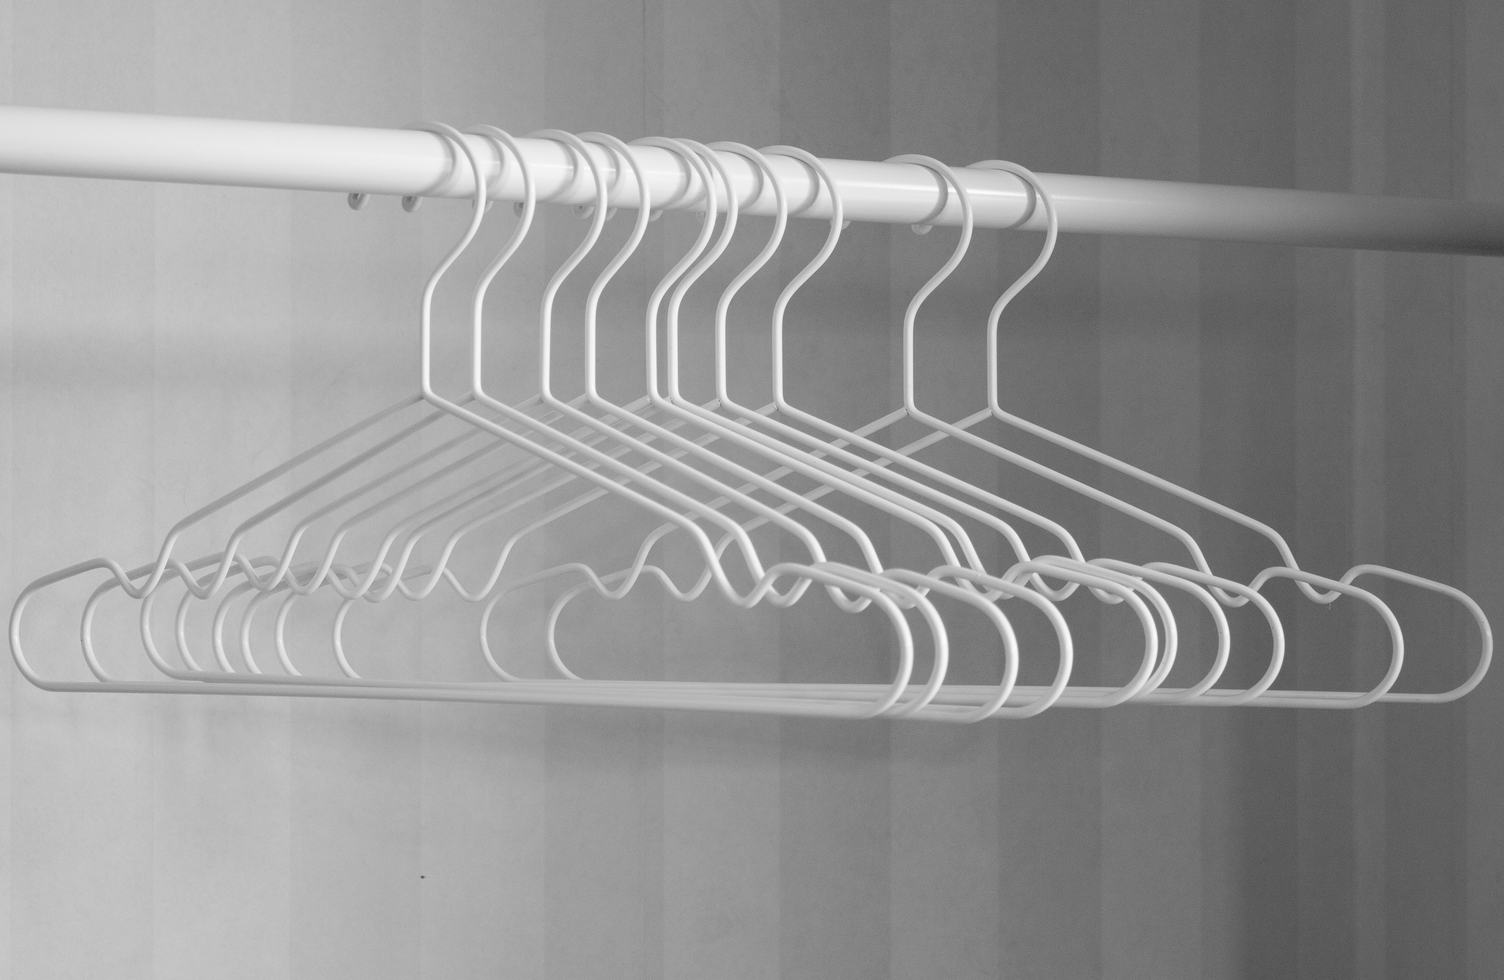 Number of Empty Hangers